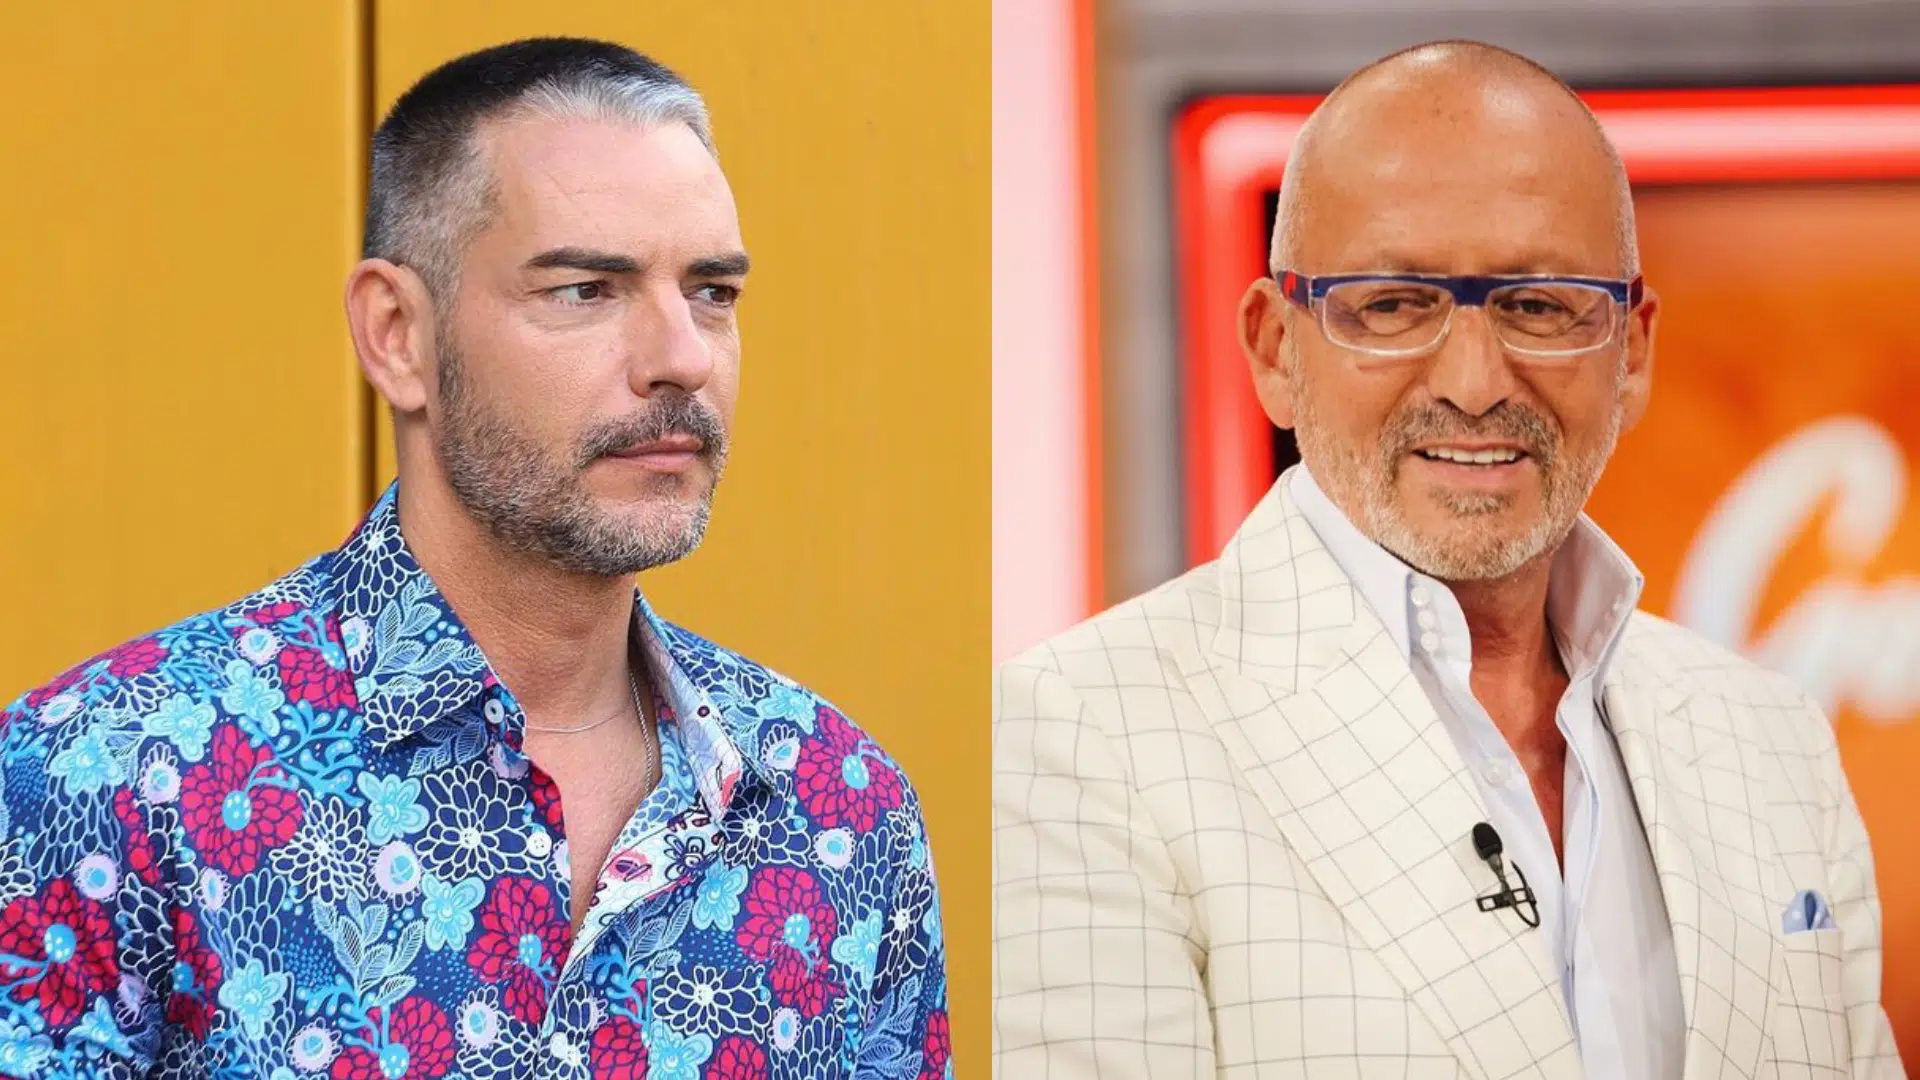 Cláudio Ramos, Manuel Luís Goucha, Big Brother, Tvi, Associação Sara Carreira